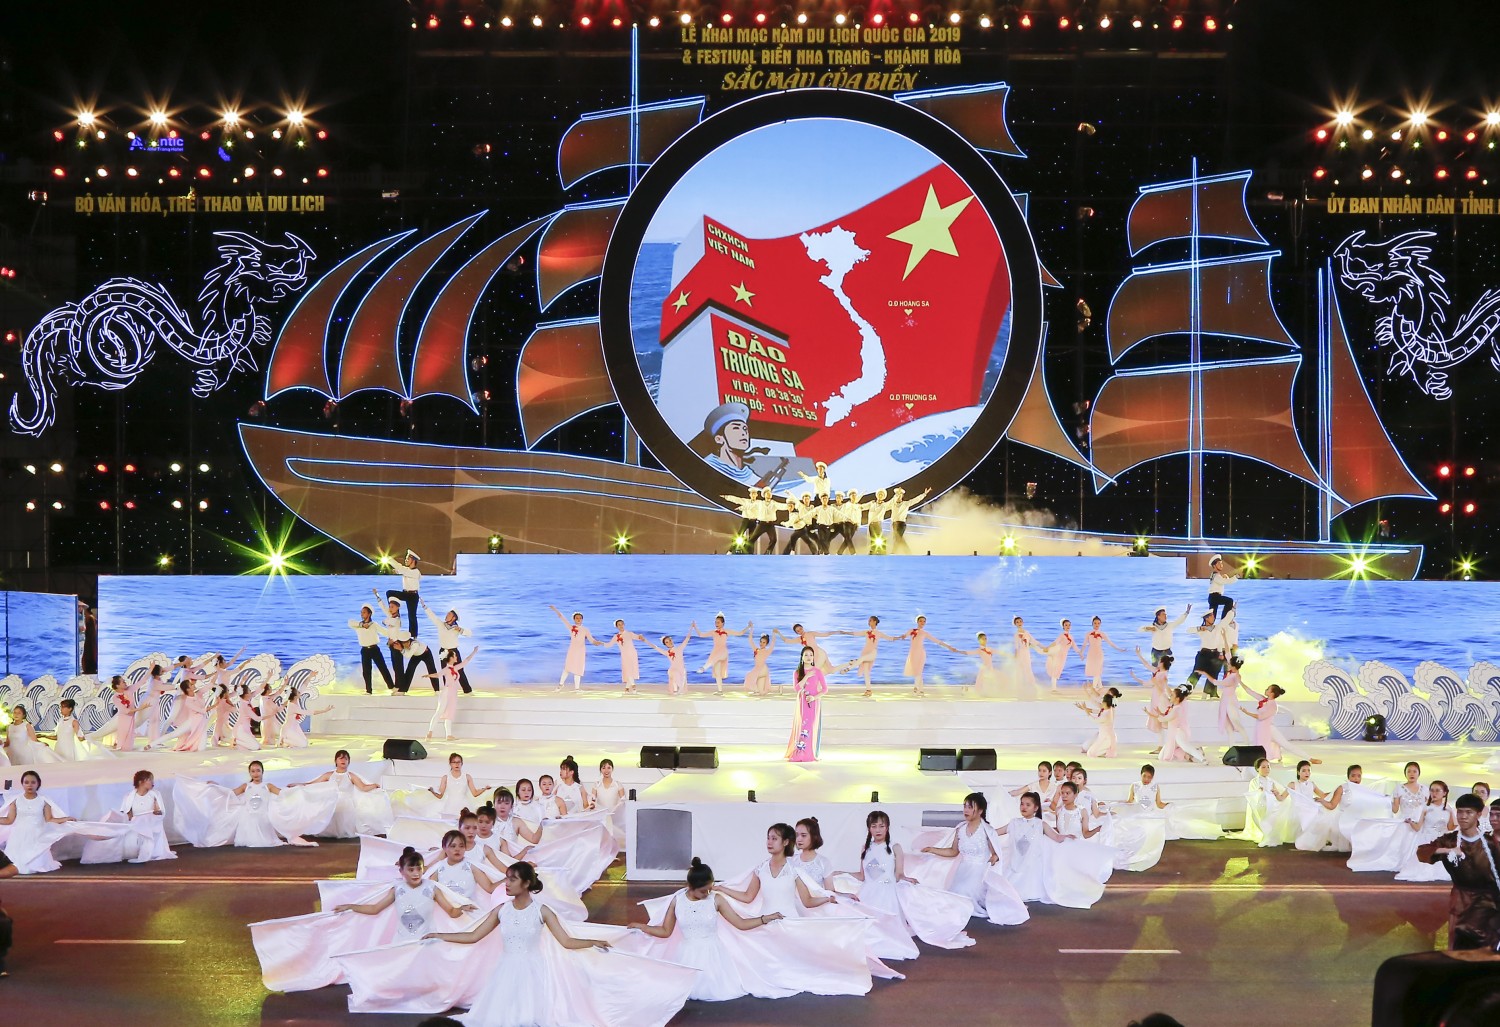 Festival Biển Nha Trang 2019